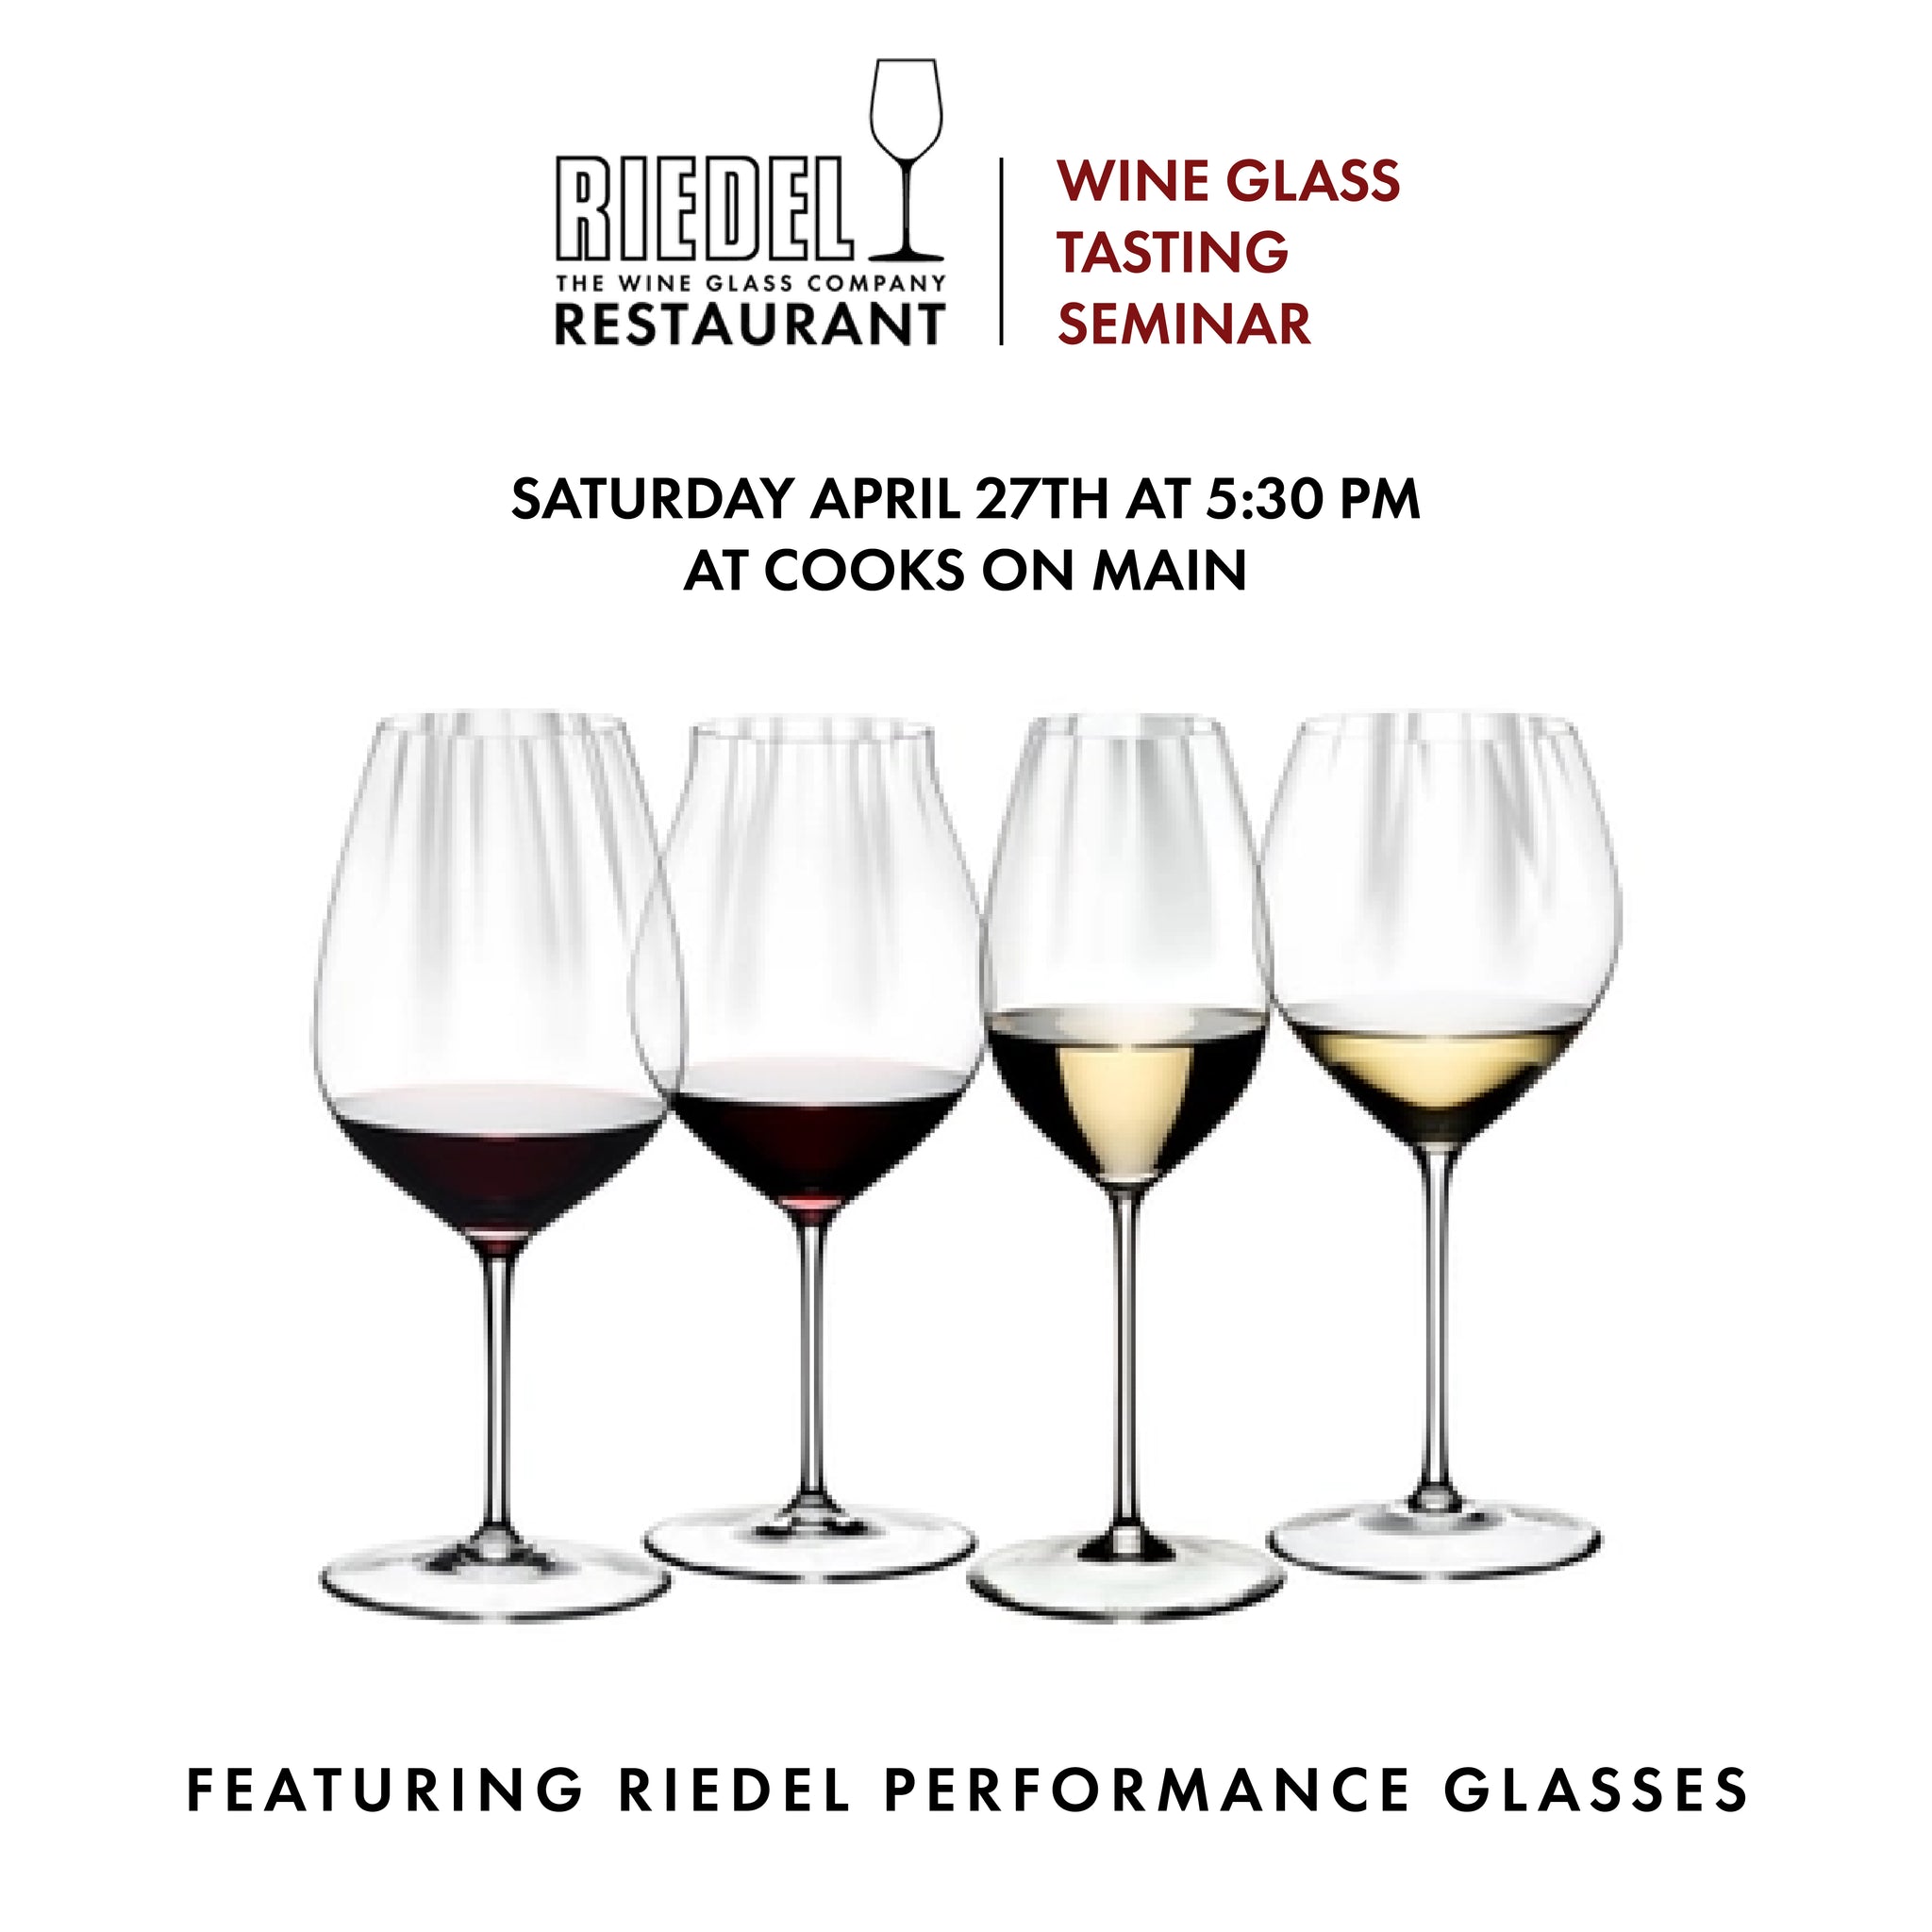 Riedel Wine Glass Tasting Seminar- Saturday April 27th - 5:30 PM